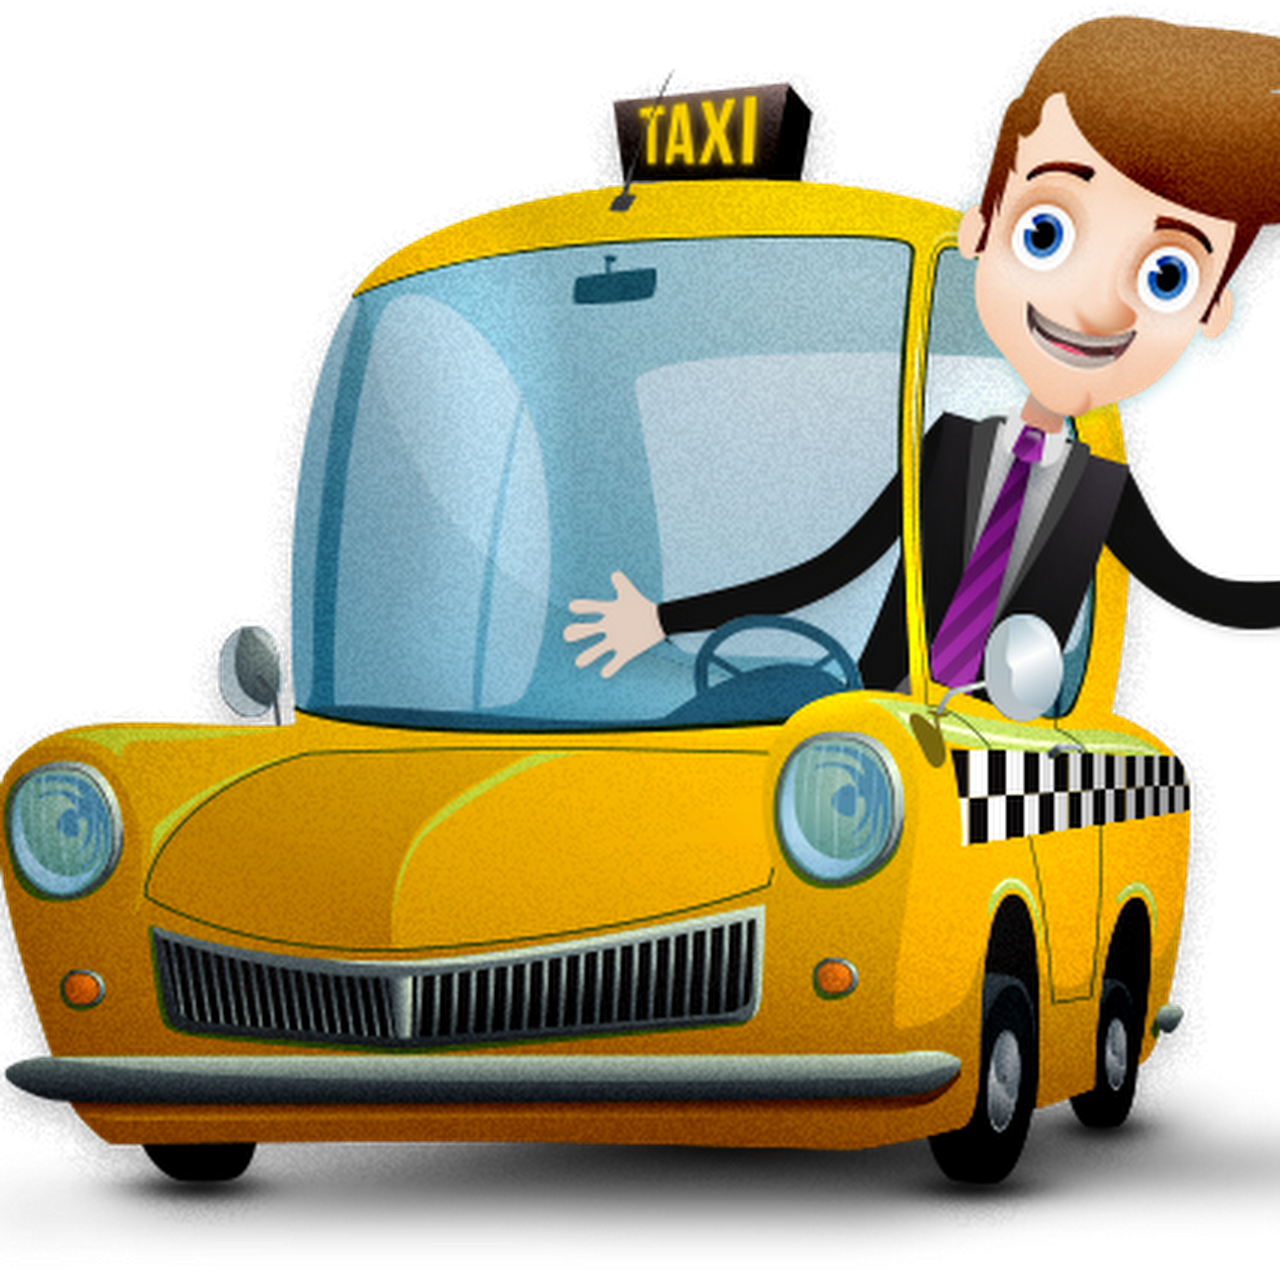 Шофер для детей. Мультяшная машинка такси. Шофер мультяшный. Профессия таксист для детей. Водитель такси детям